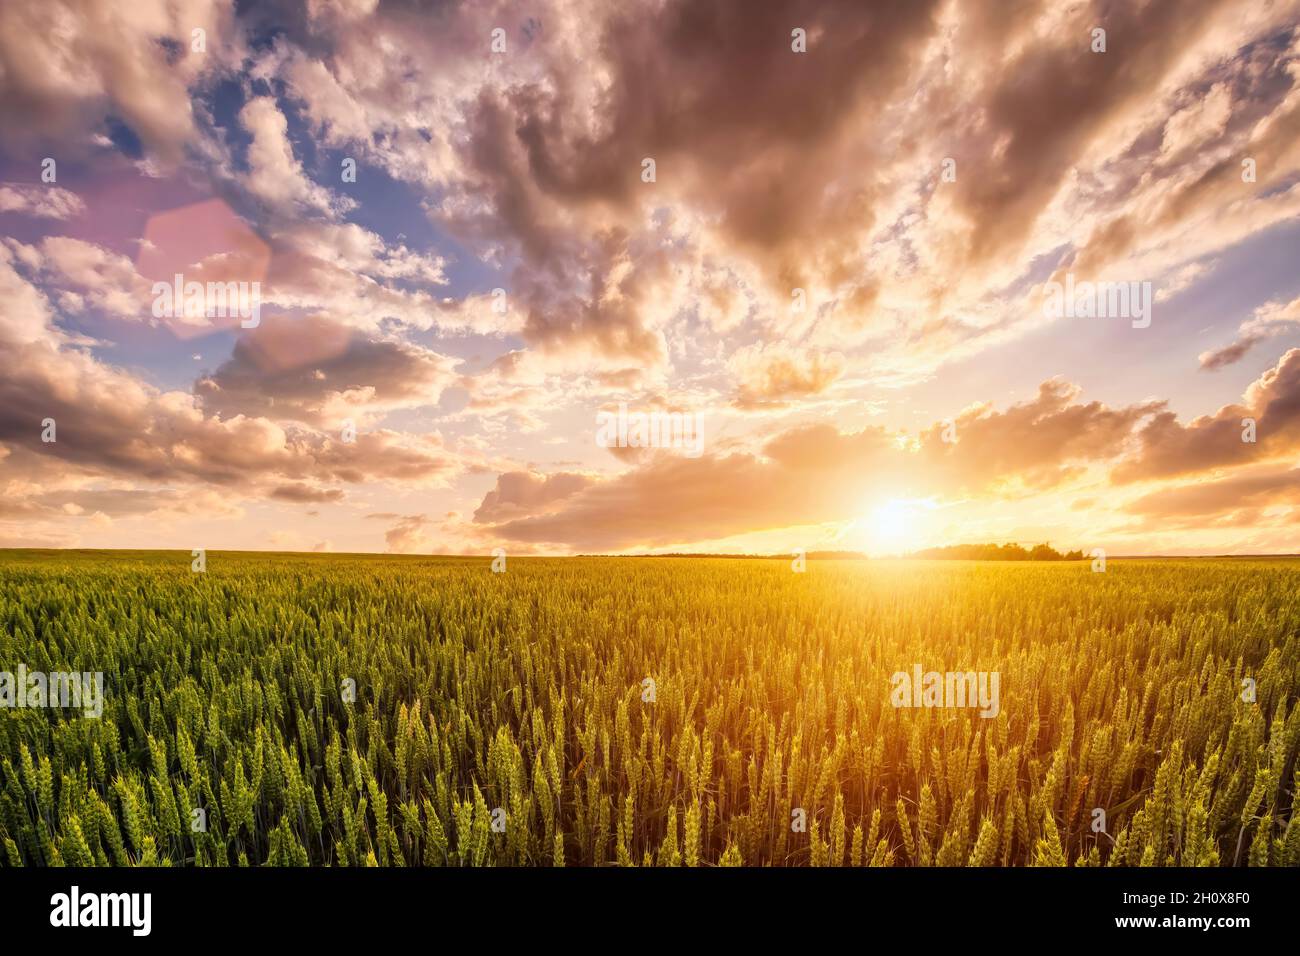 Coucher de soleil ou lever de soleil sur un champ de blé avec de jeunes oreilles vertes et un ciel nuageux spectaculaire. Banque D'Images